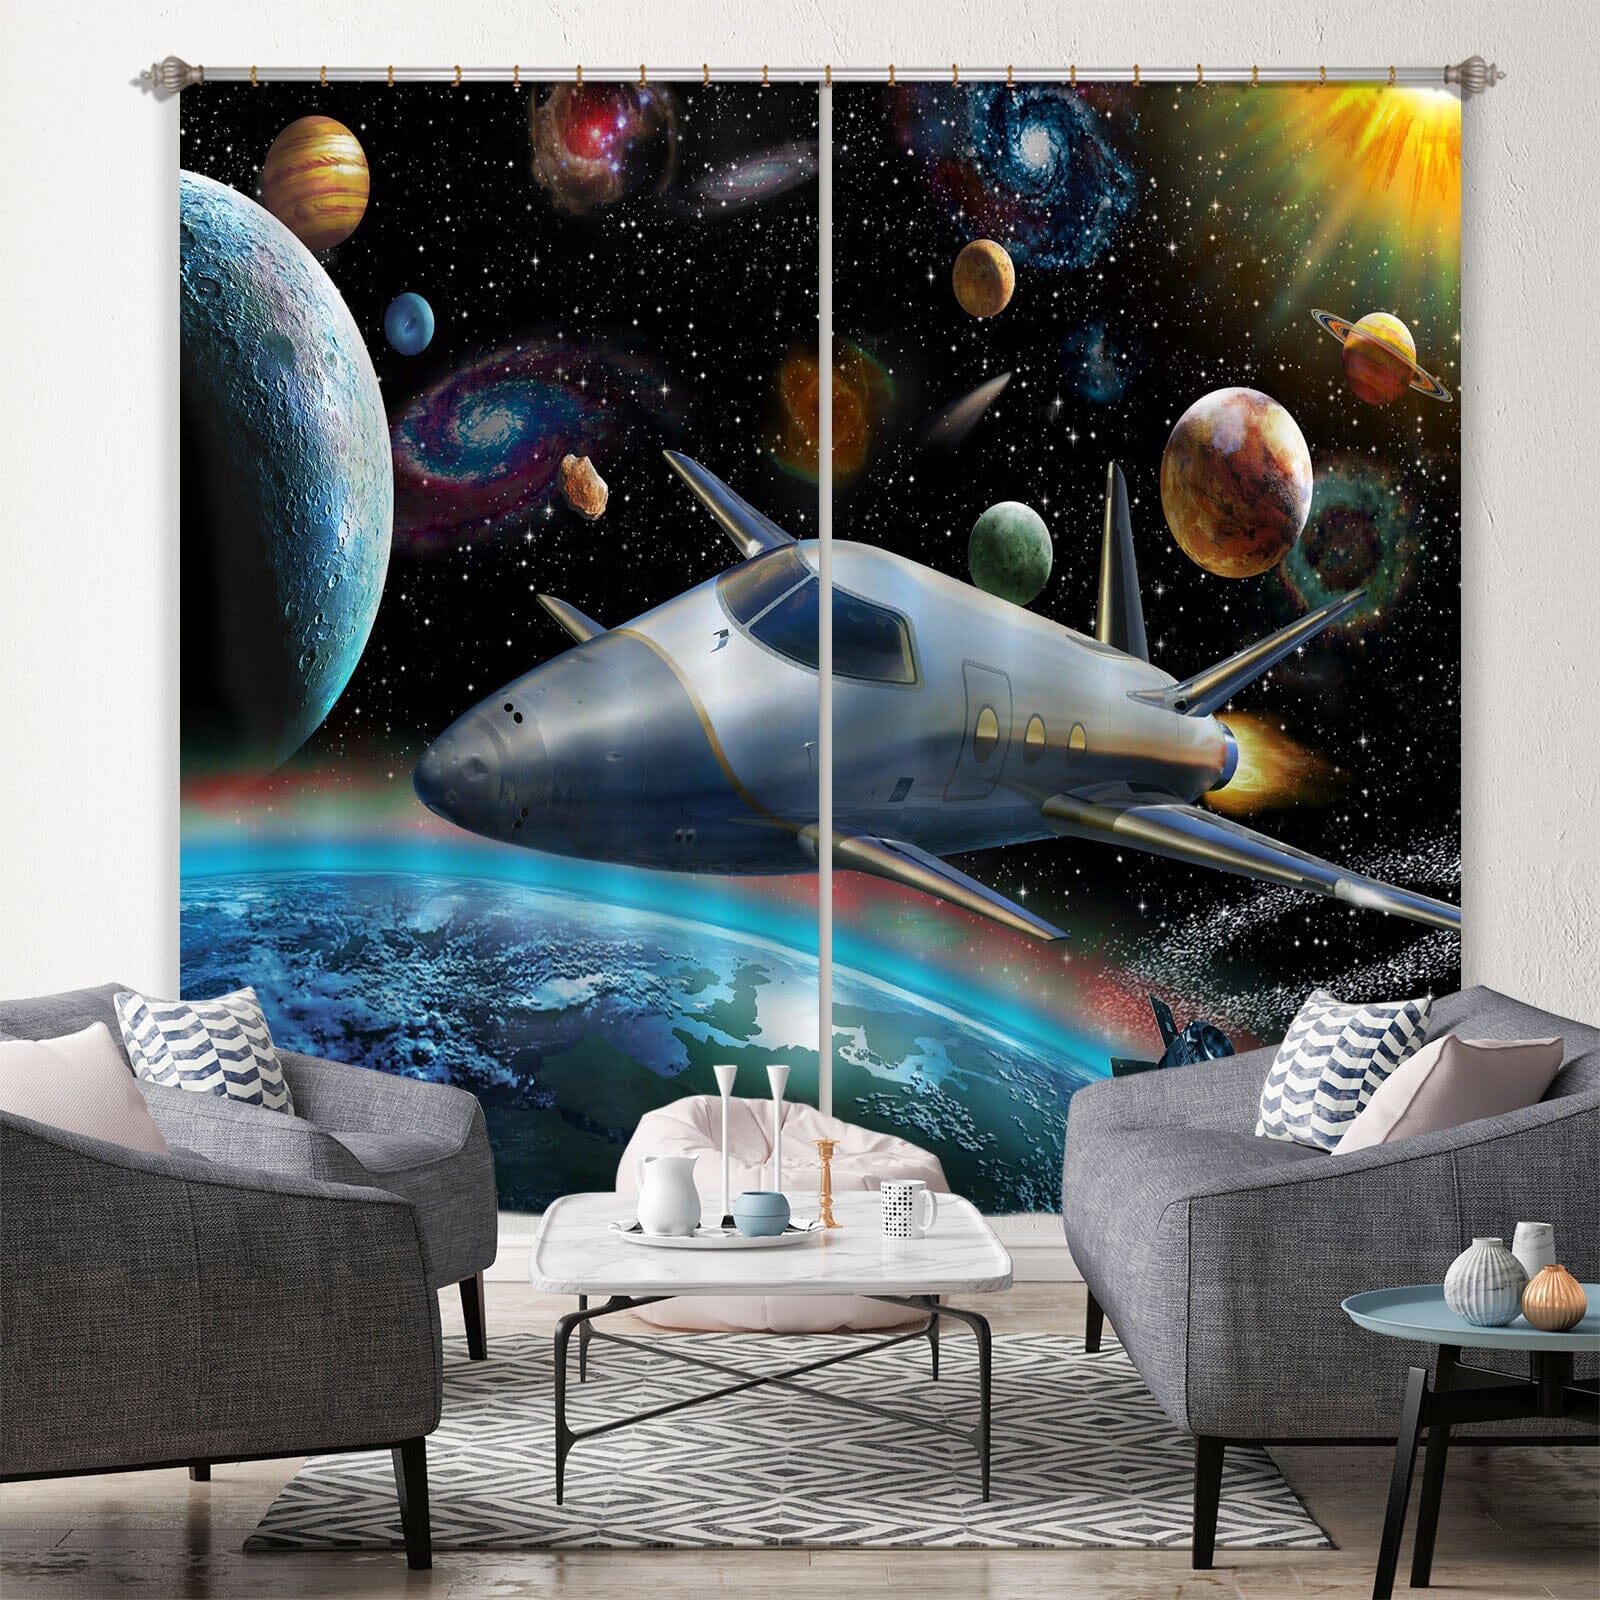 3D Planet Spaceship 060 Adrian Chesterman Curtain Curtains Drapes Curtains AJ Creativity Home 